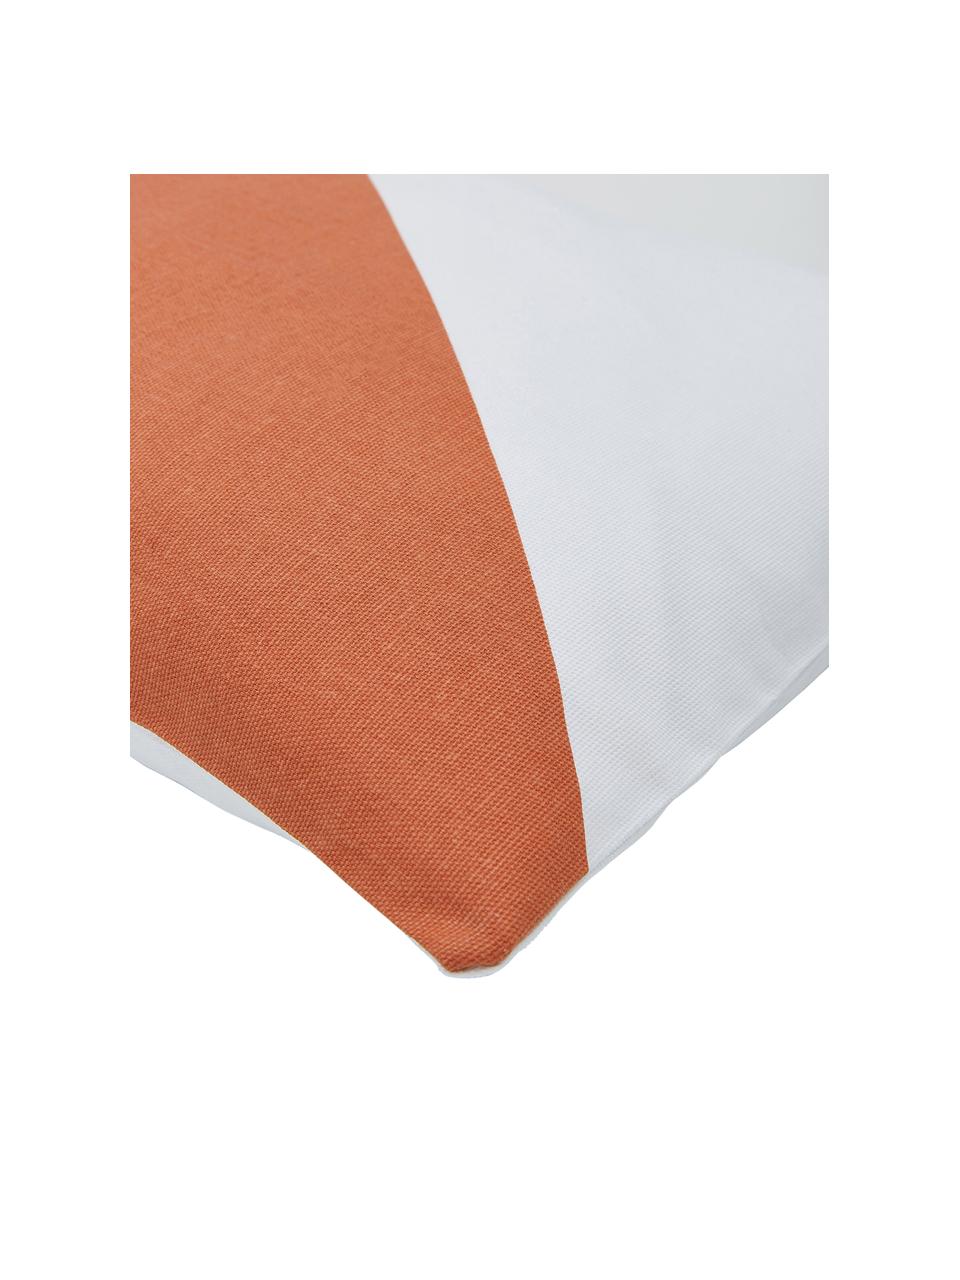 Poszewka na poduszkę Ren, 100% bawełna, Biały, pomarańczowy, S 30 x D 50 cm